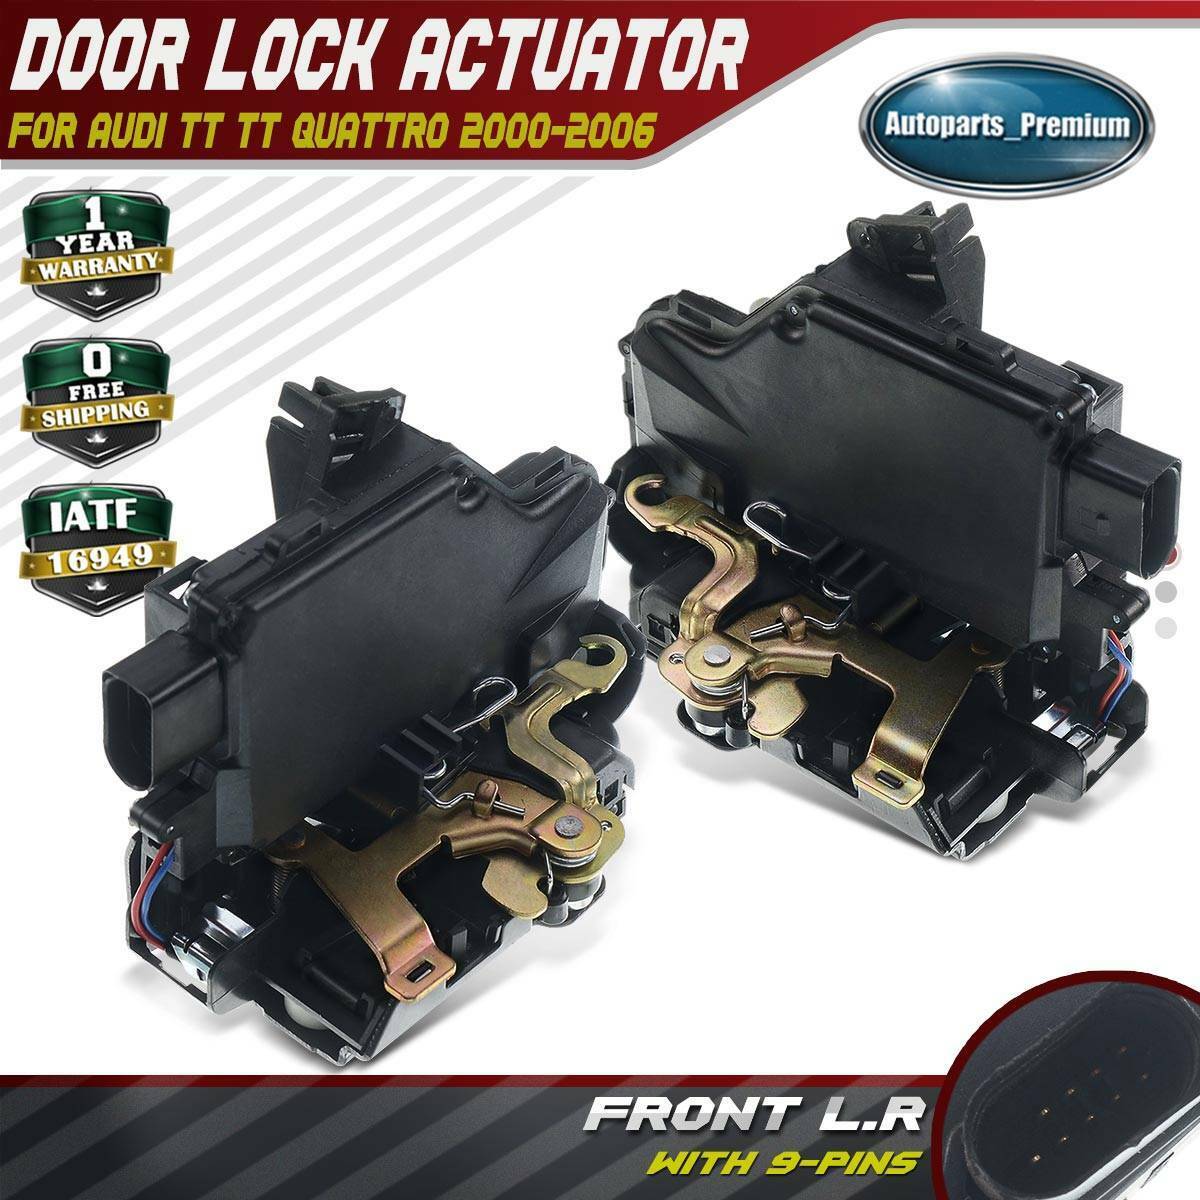 2x Door Lock Actuator Front Left & Right for Audi TT Quattro 1.8L 3.2L 2000-2006